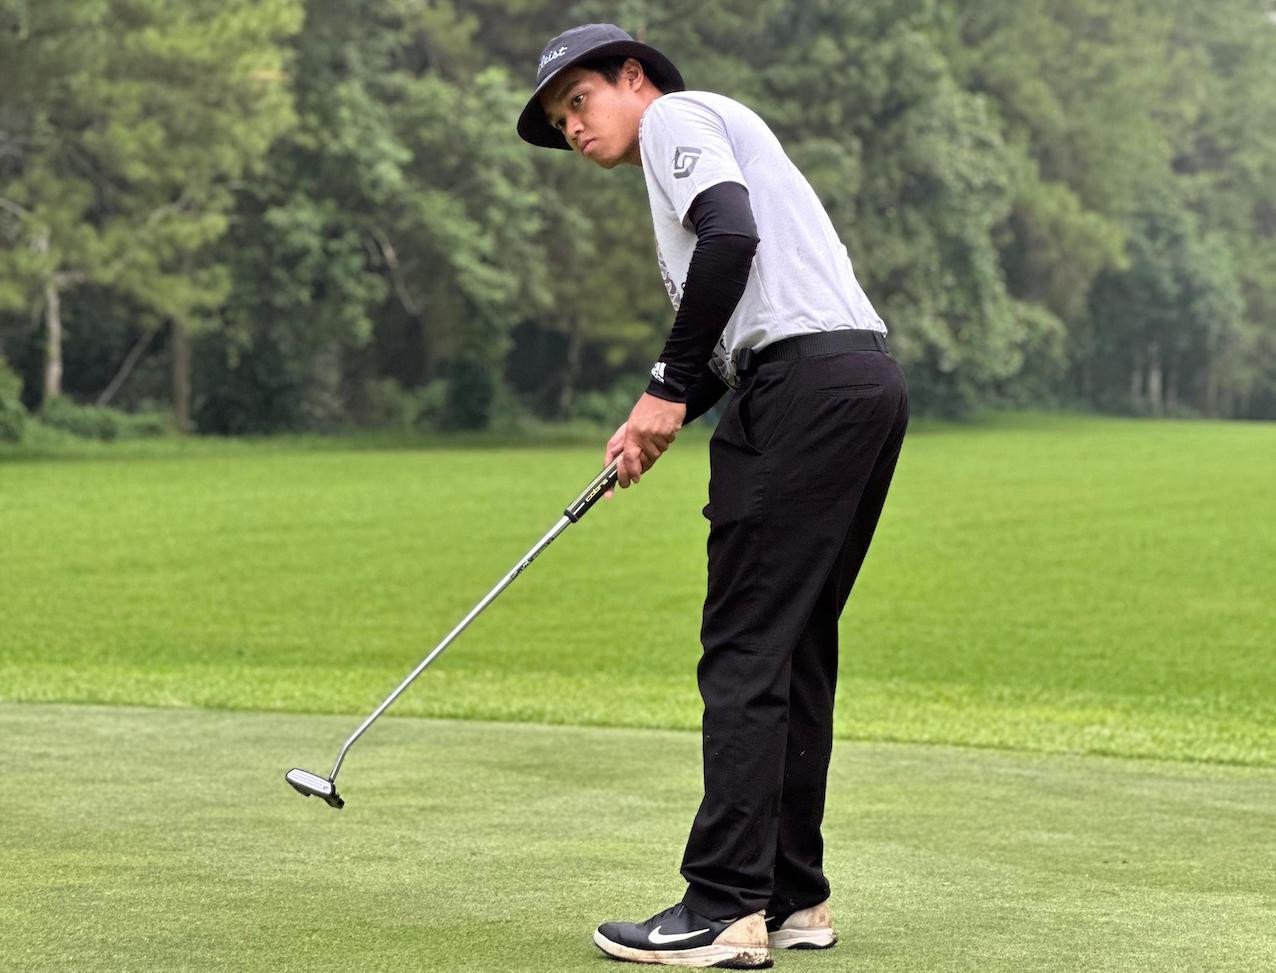 UKM Brawijaya Golf Gelar Turnamen, Kesempatan Bagi Mahasiswa untuk Berprestasi di Dunia Golf